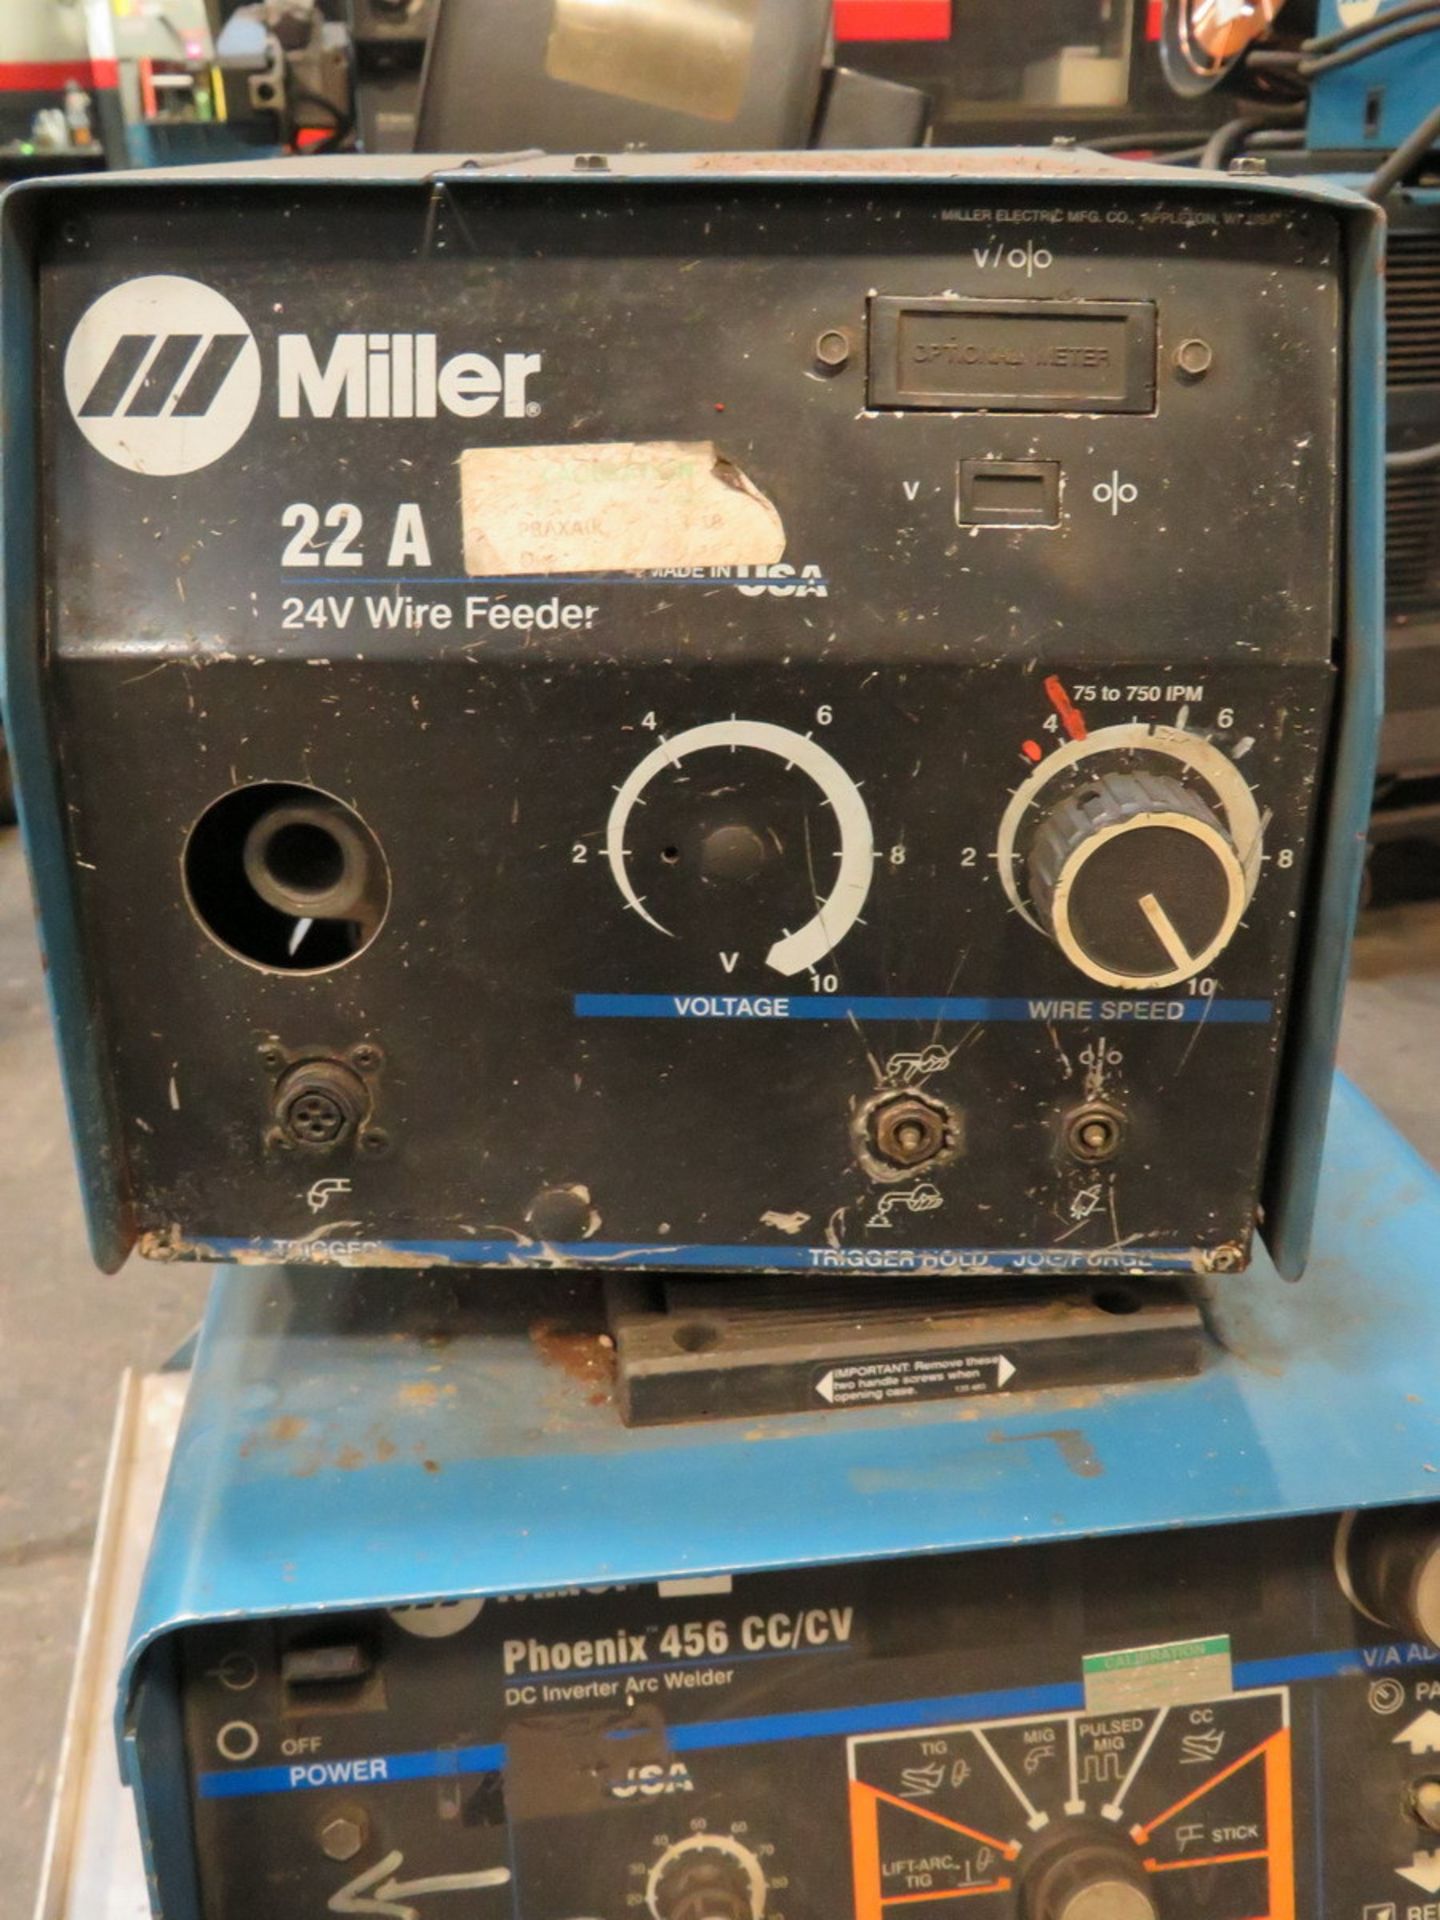 1999 Miller Phoenix 456 DC Inverter Arc Welder - Image 4 of 7